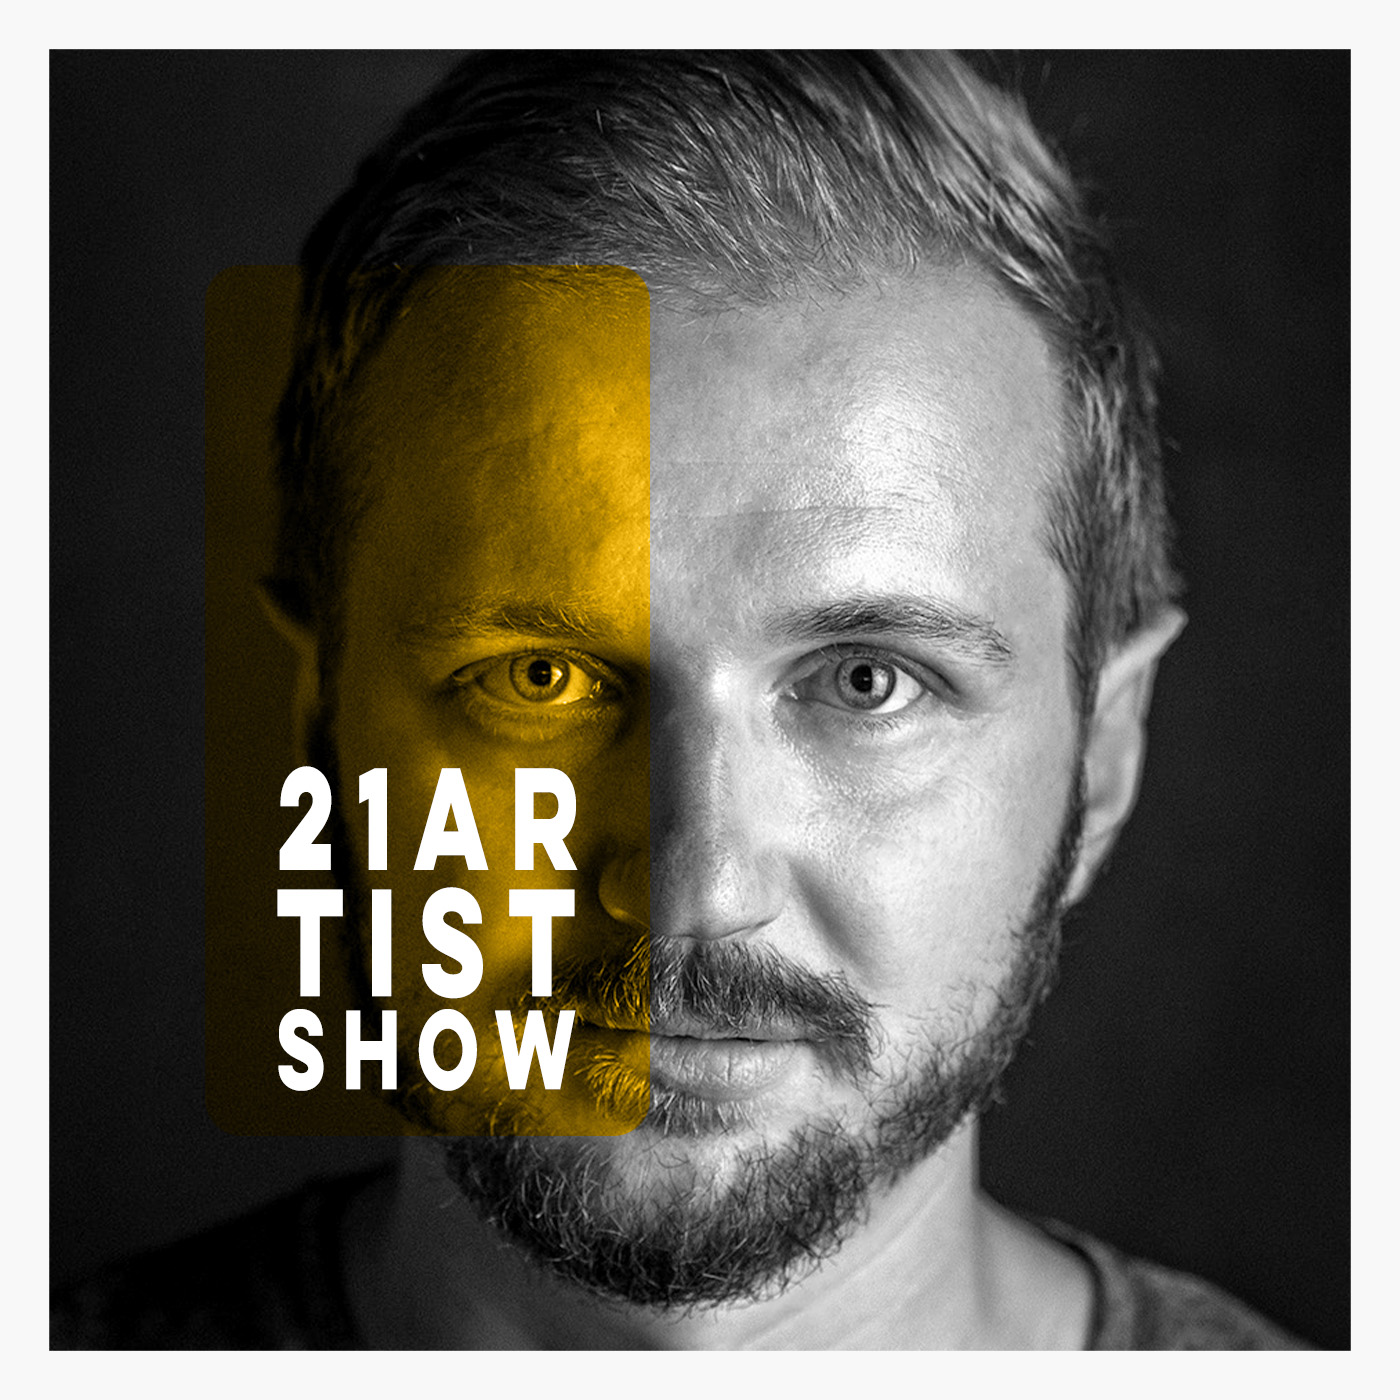 21 Artist Show